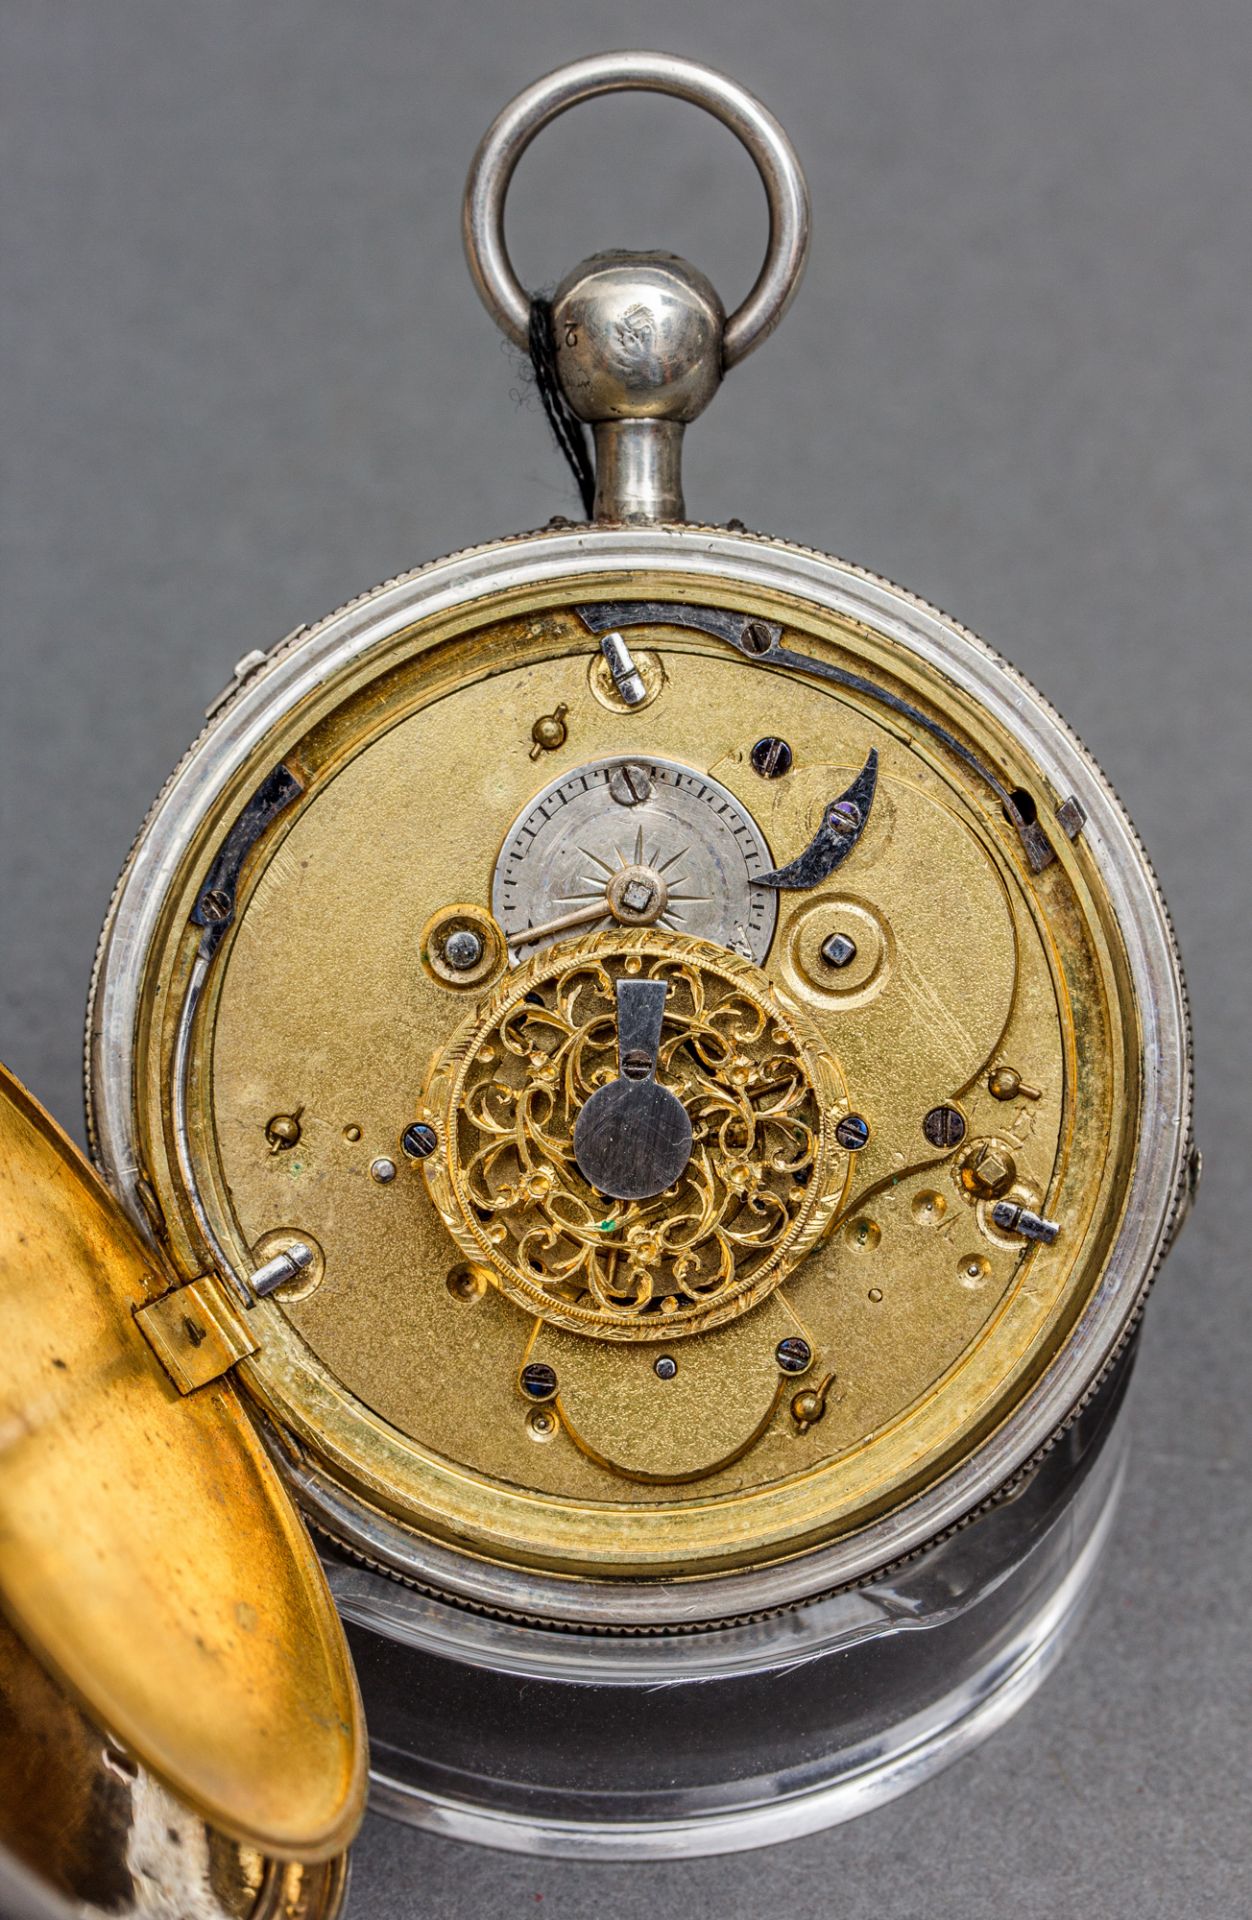 Taschenuhr mit Viertelstundenrepetition, wohl England, 19. Jh., Silber - Bild 4 aus 4